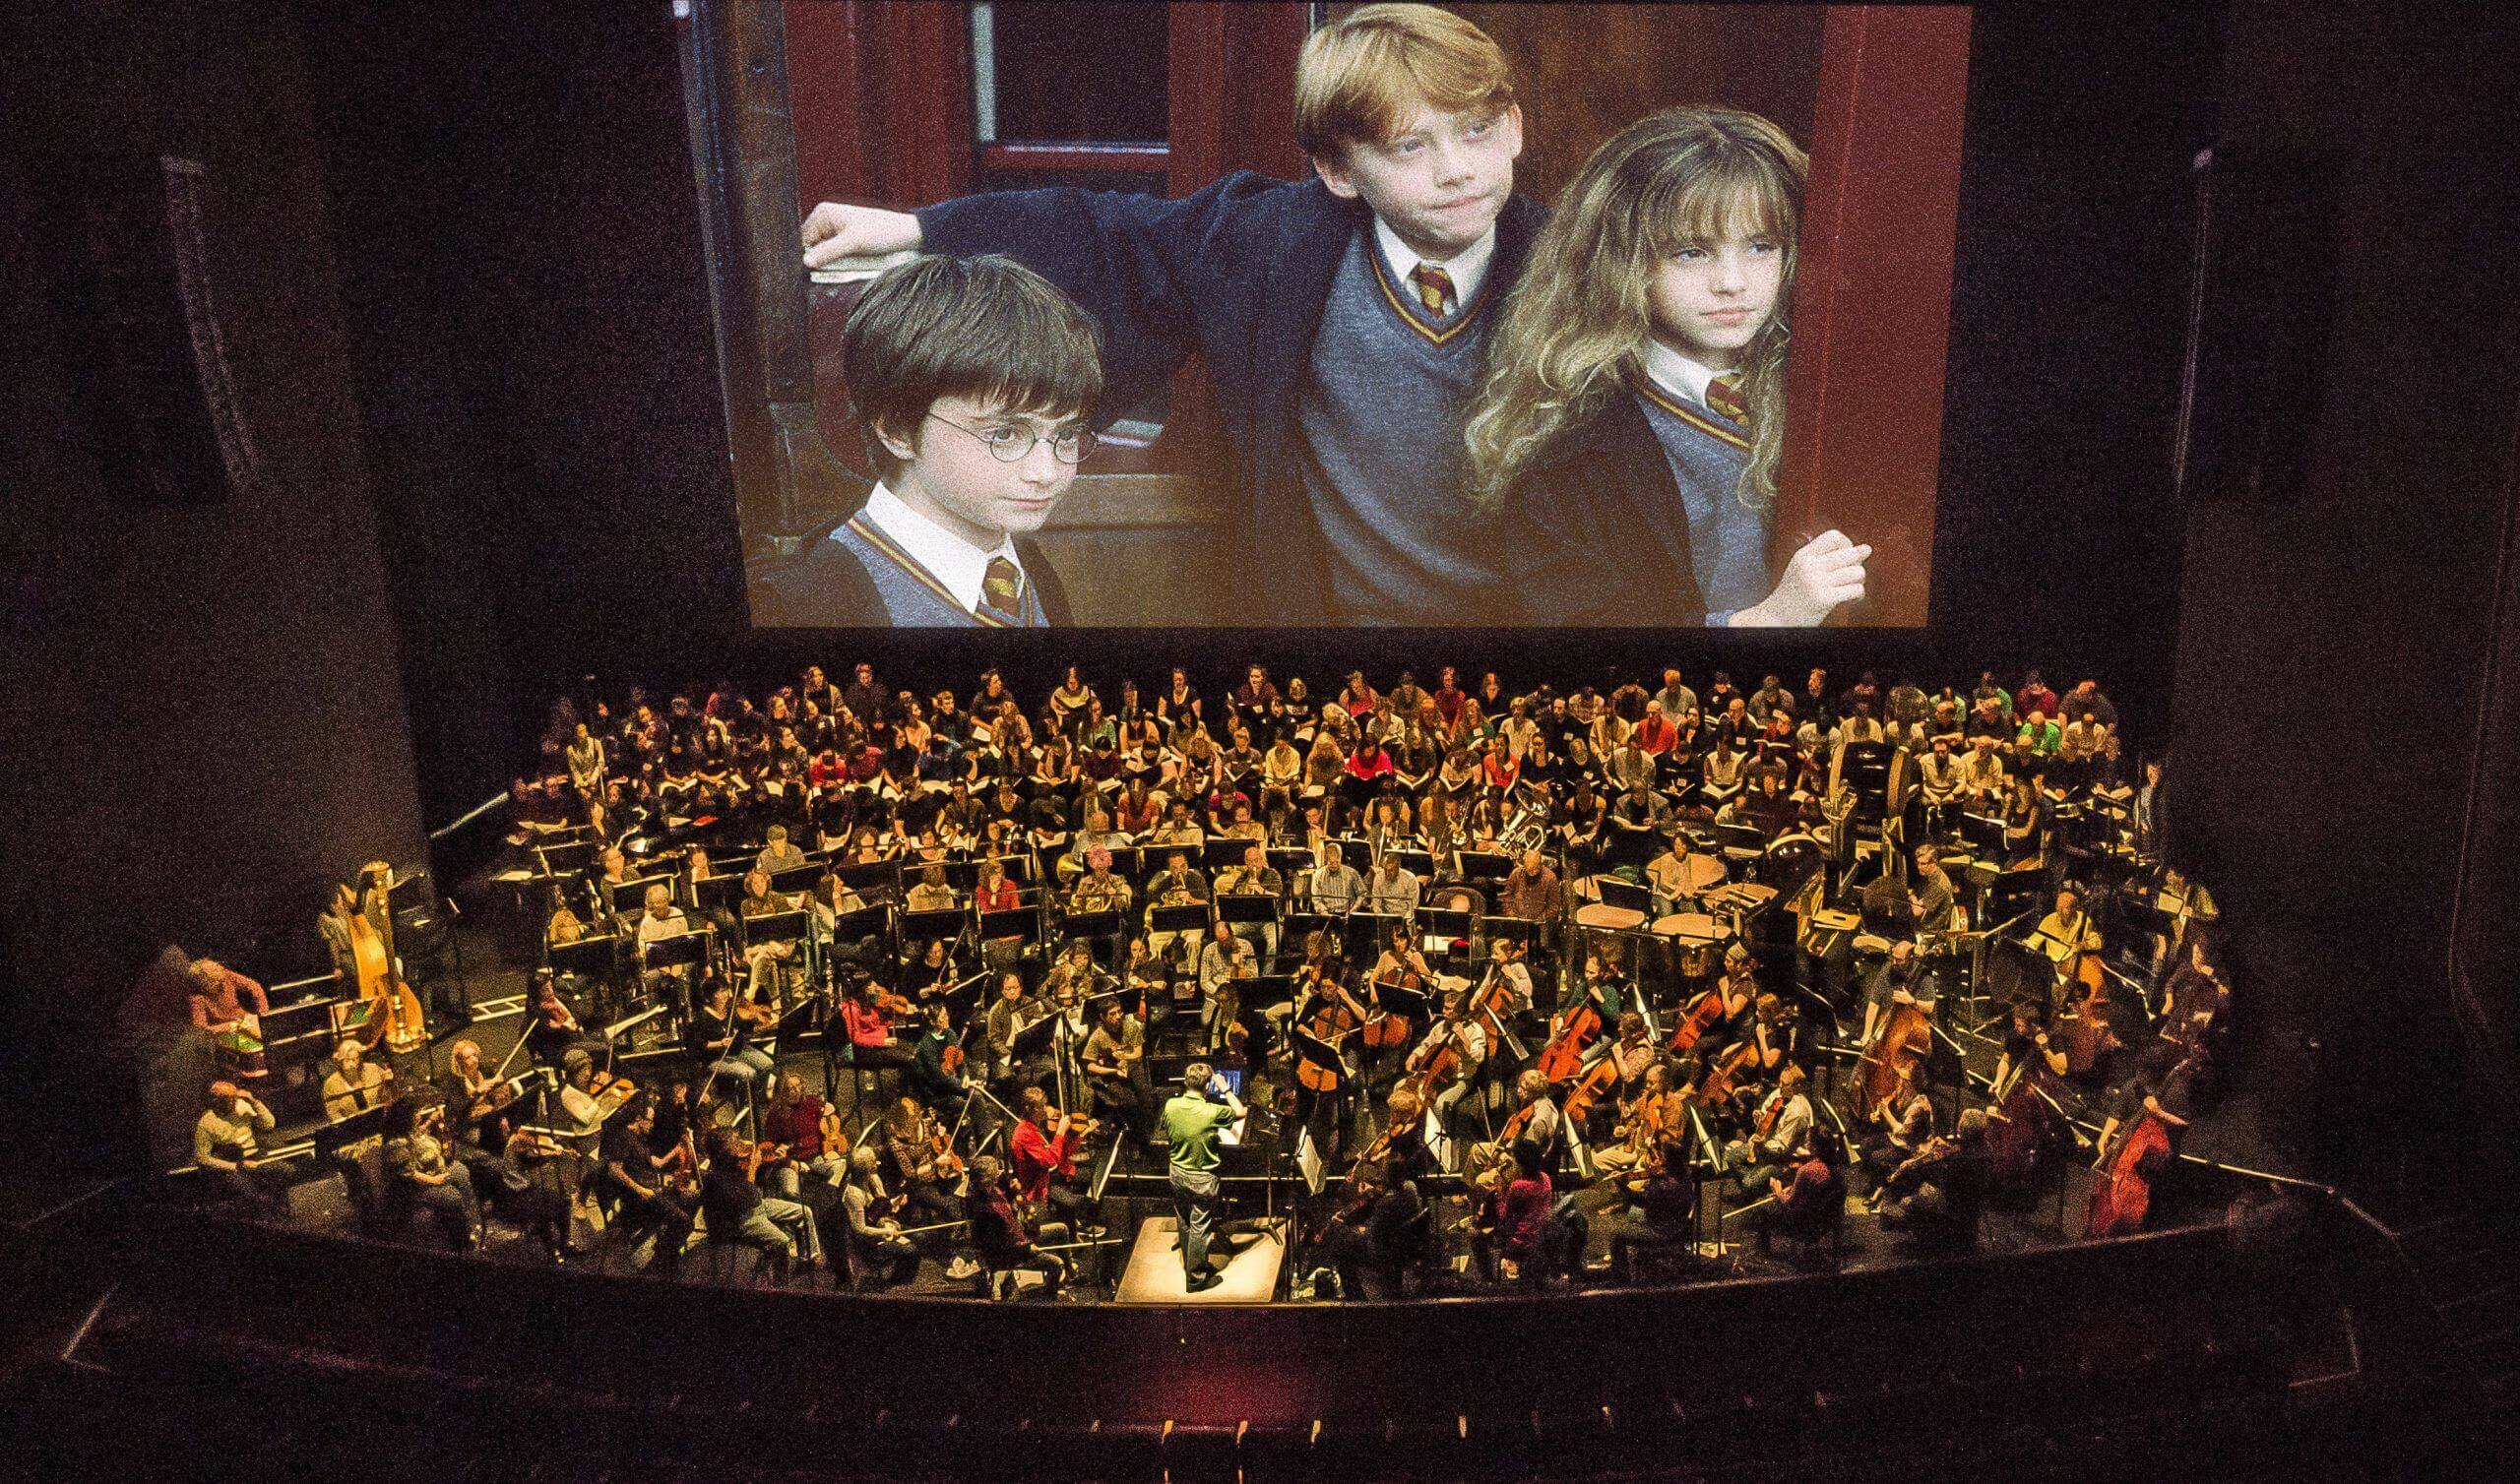 Filme concerto de Harry Potter em Portugal a 3 de Fevereiro